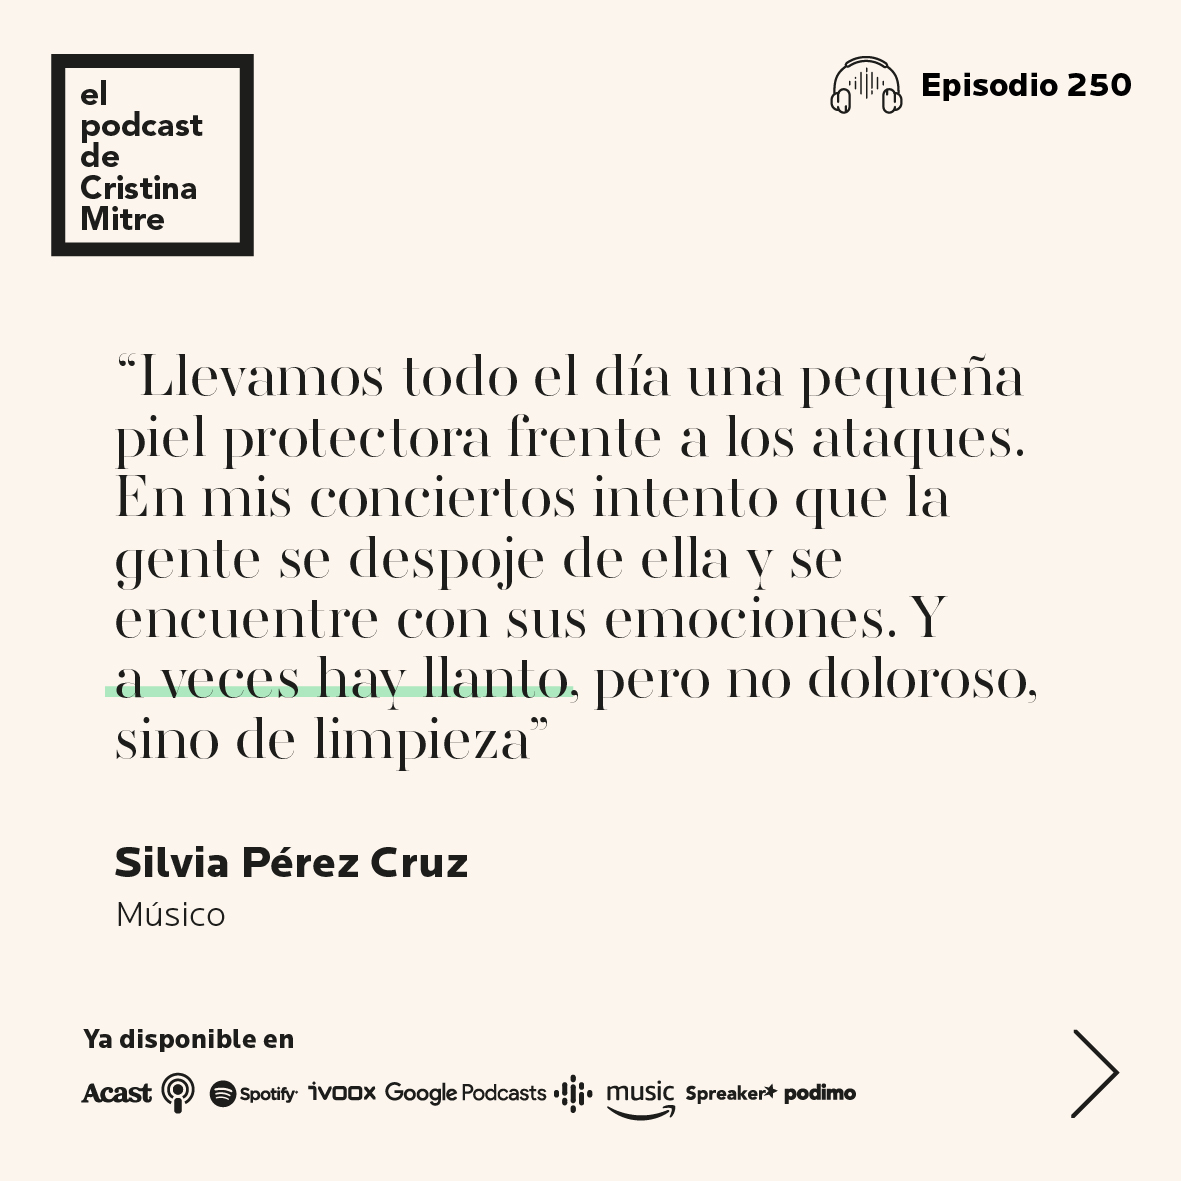 el podcast de cristina Mitre Silvia perez cruz